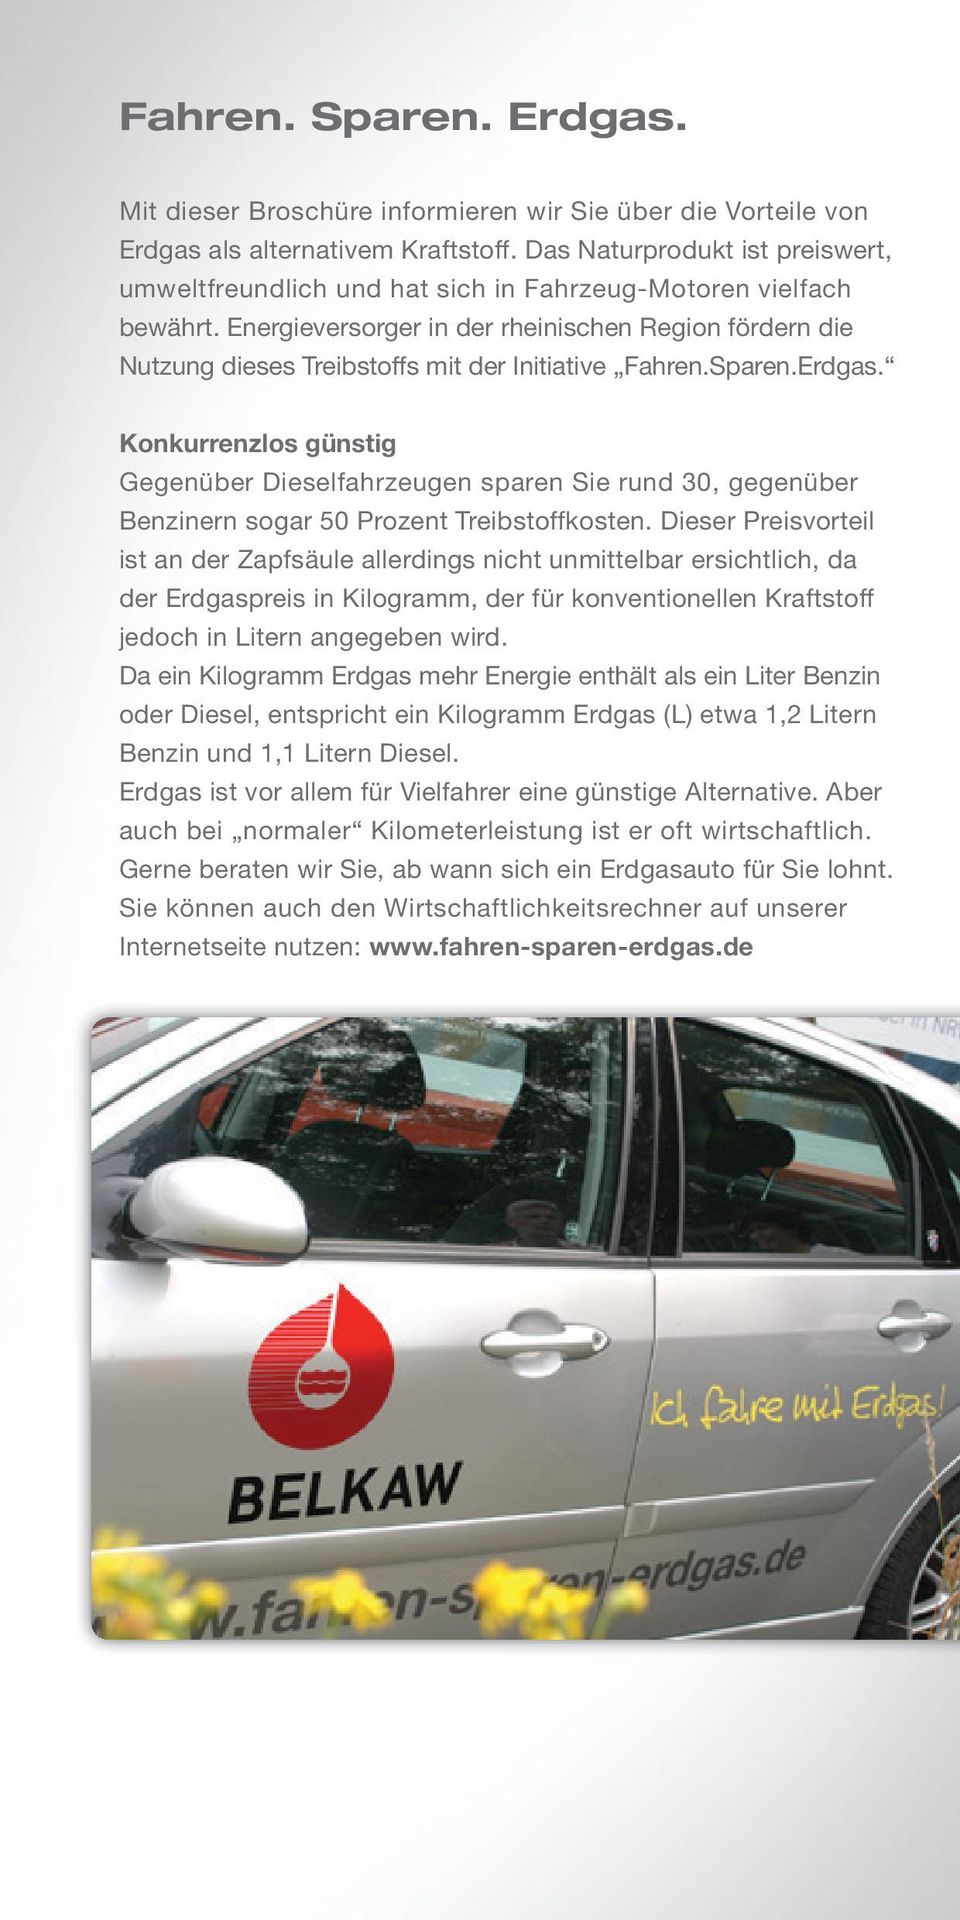 Energieversorger in der rheinischen Region fördern die Nutzung dieses Treibstoffs mit der Initiative Fahren.Sparen.Erdgas.